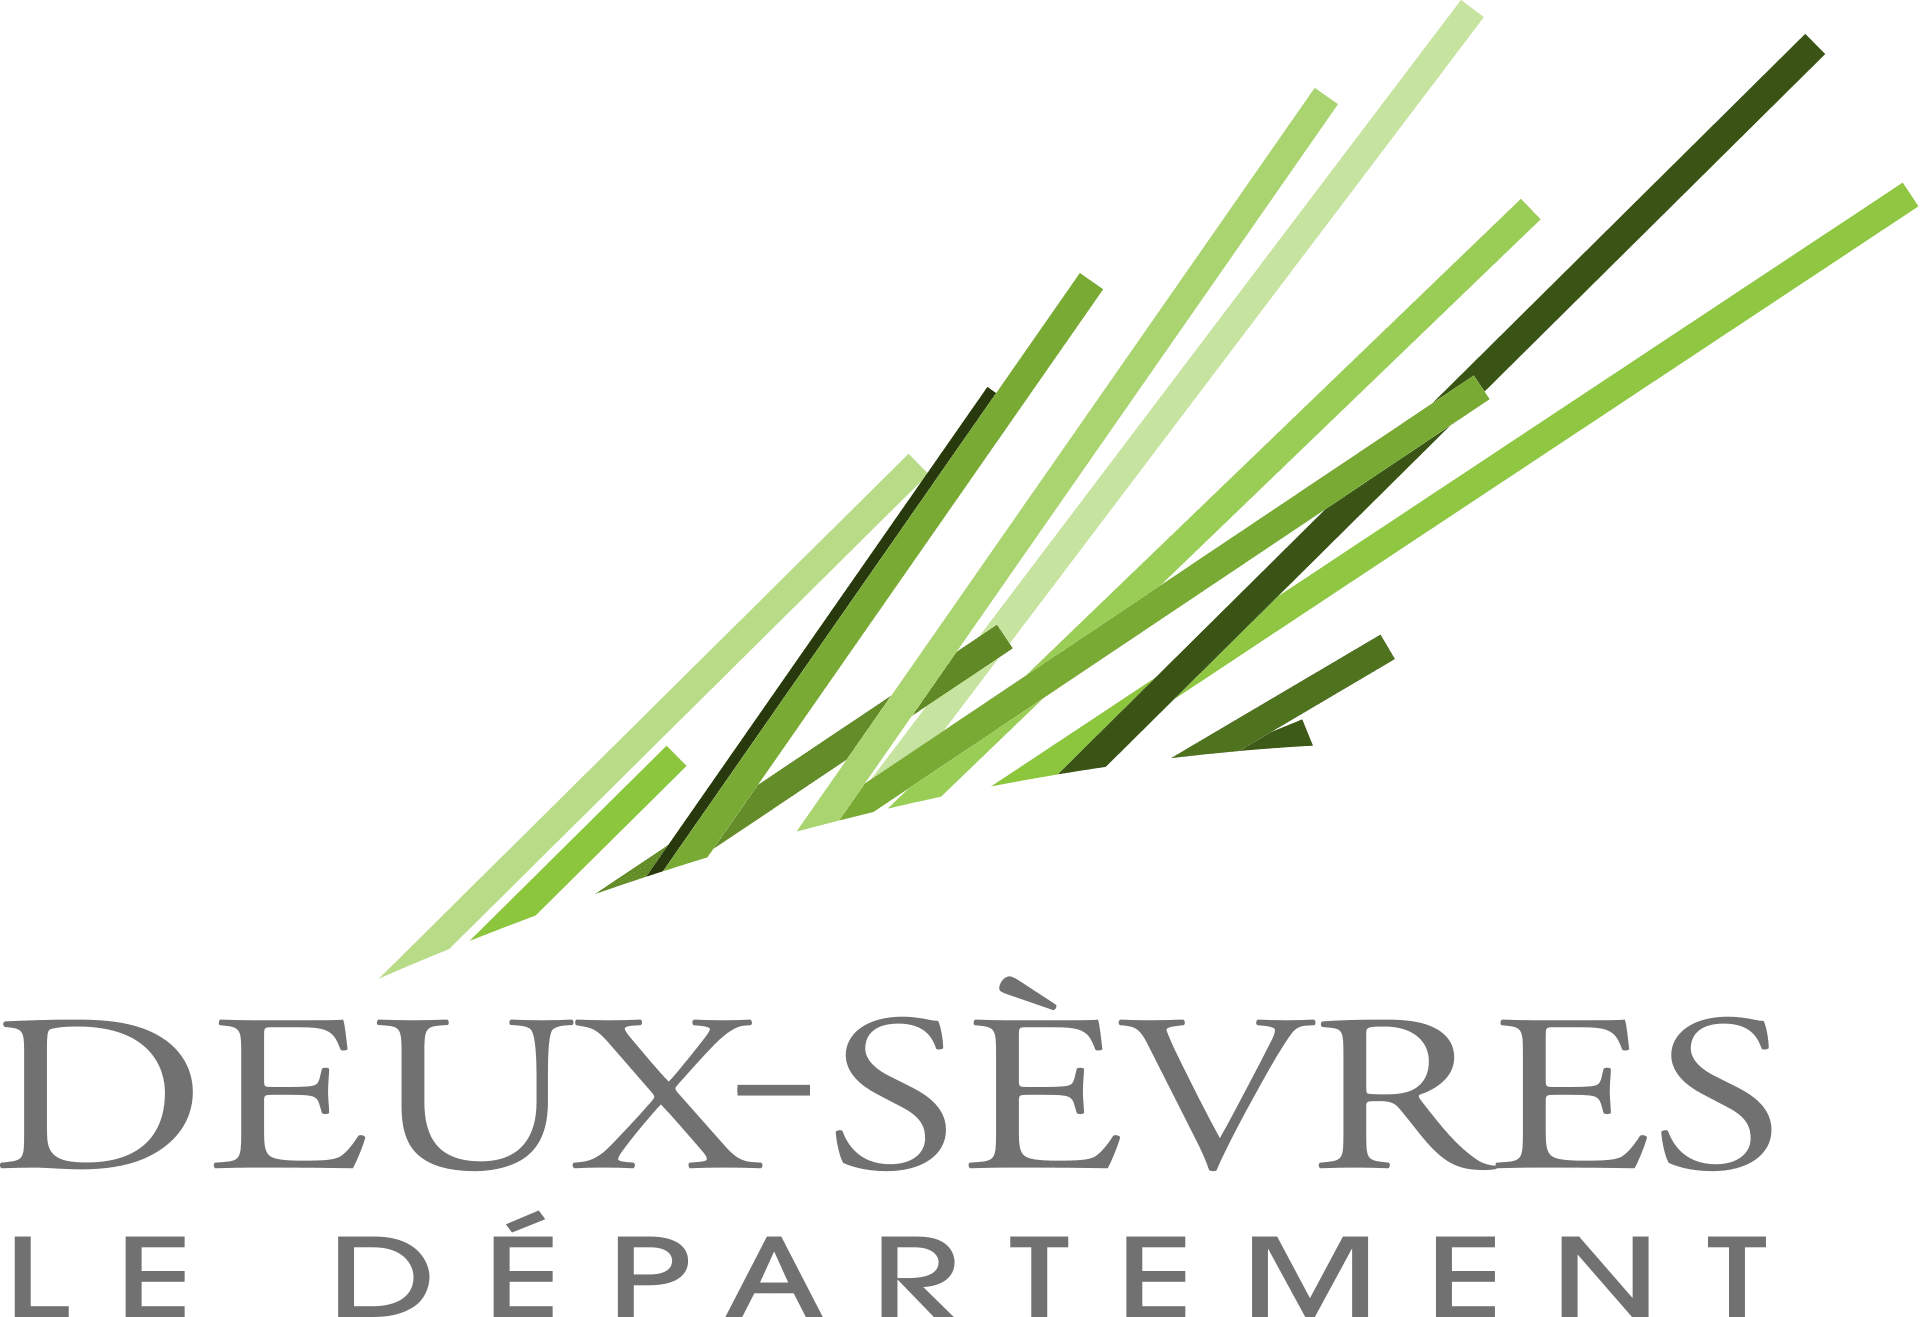 Département Deux-Sèvres